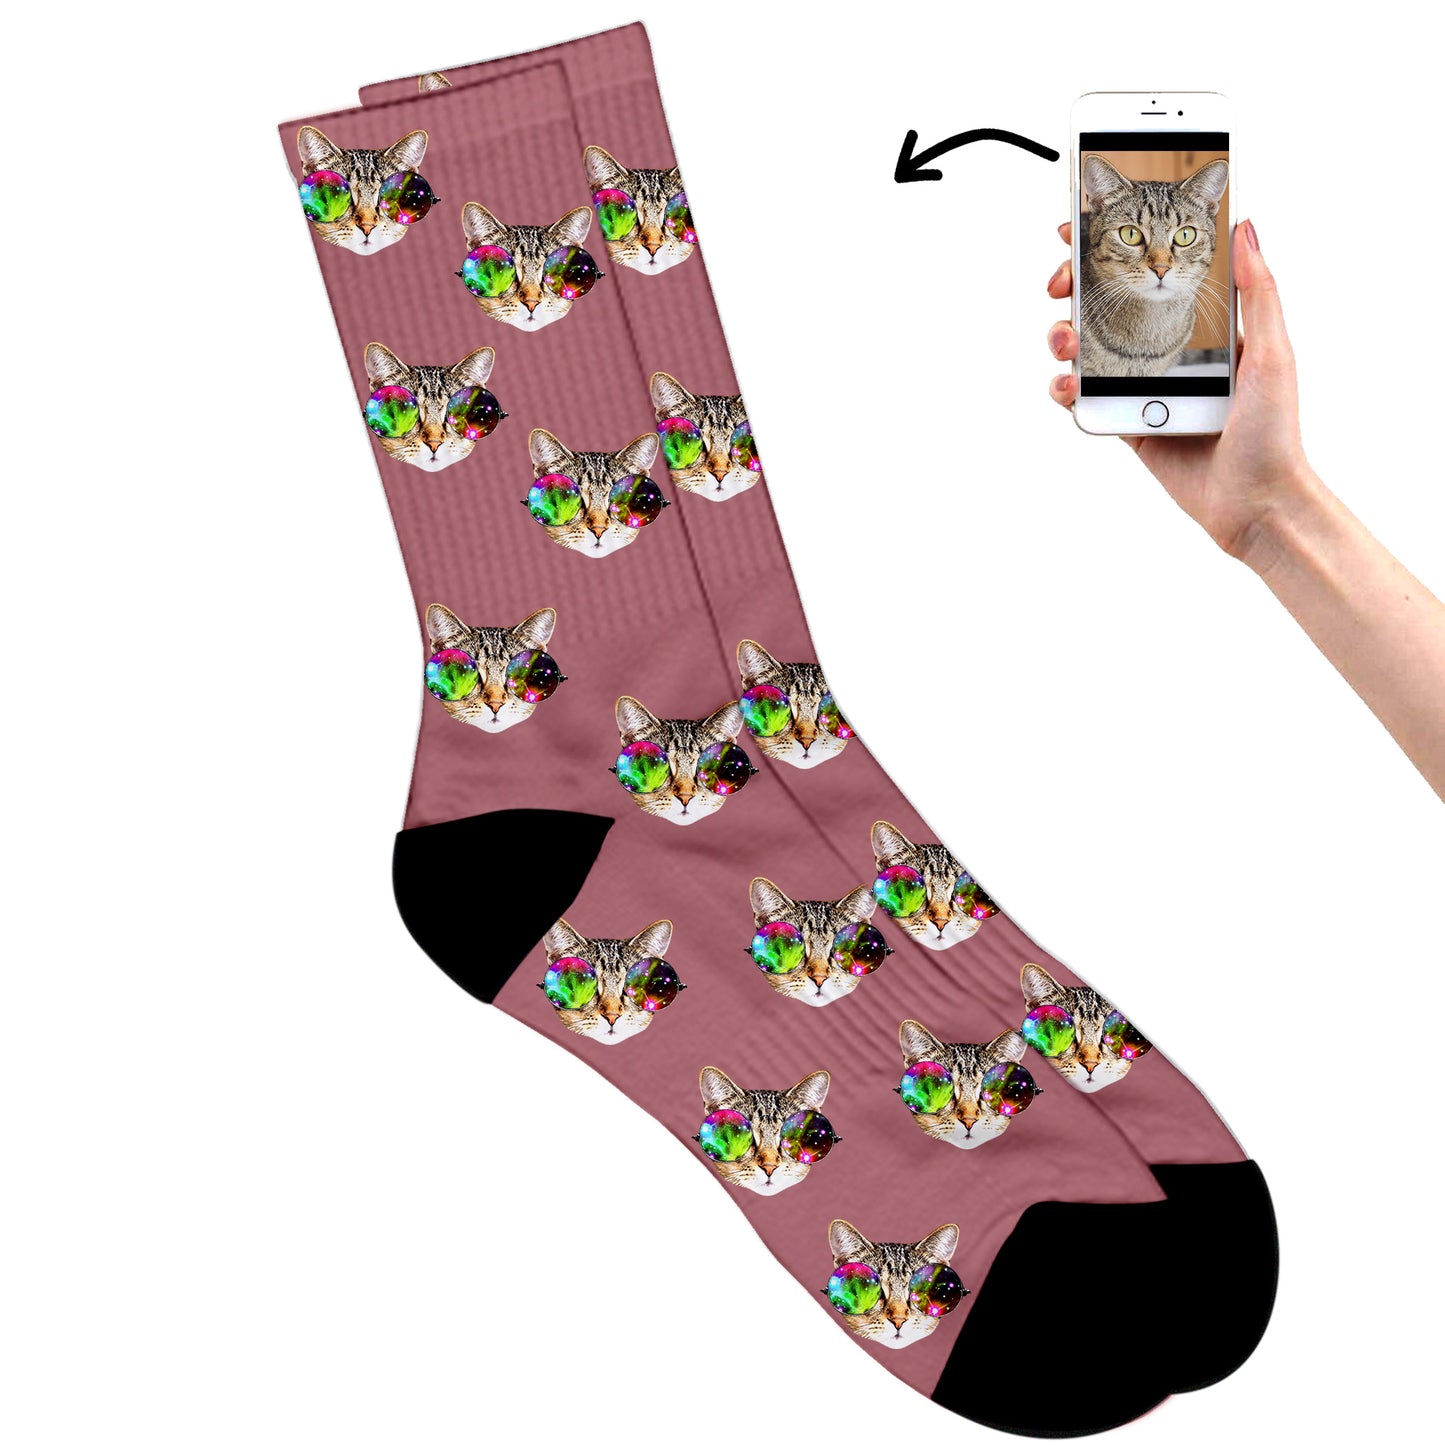 
                  
                    Cool Cat Socks
                  
                